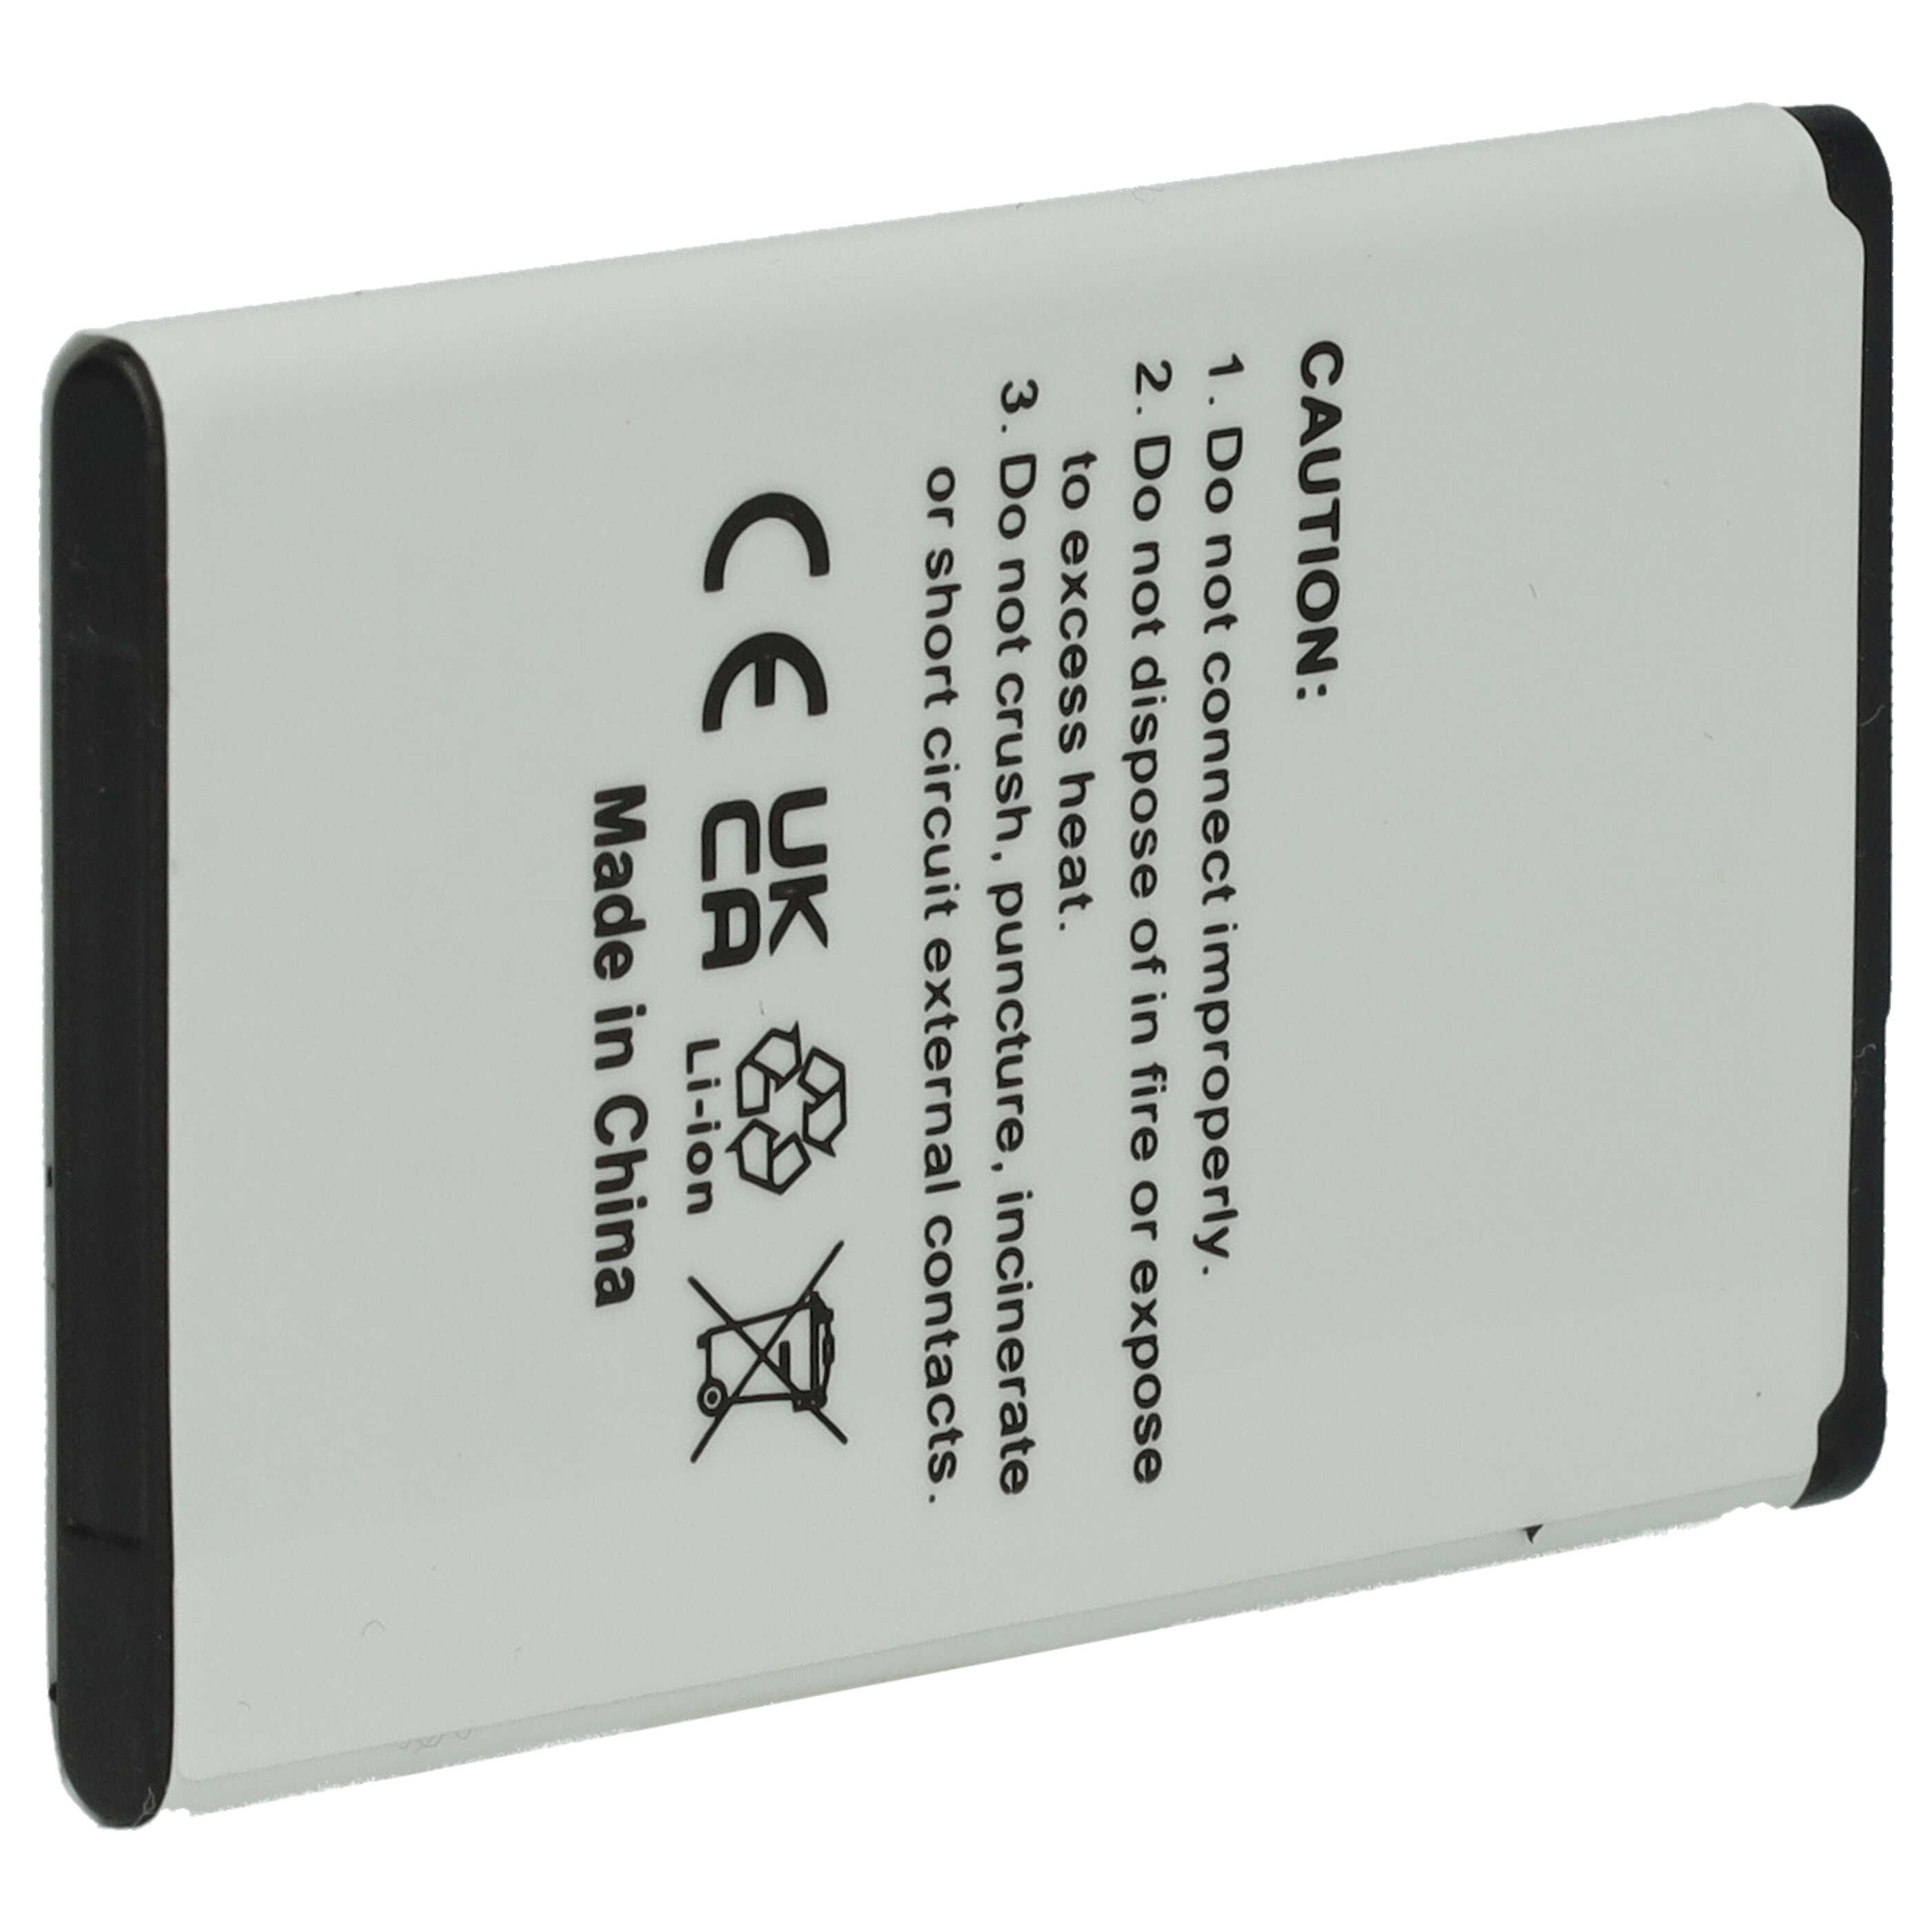 Senior Mobile Phone Battery Replacement for Gigaset V30145-K1310-X470 - 800mAh 3.7V Li-Ion